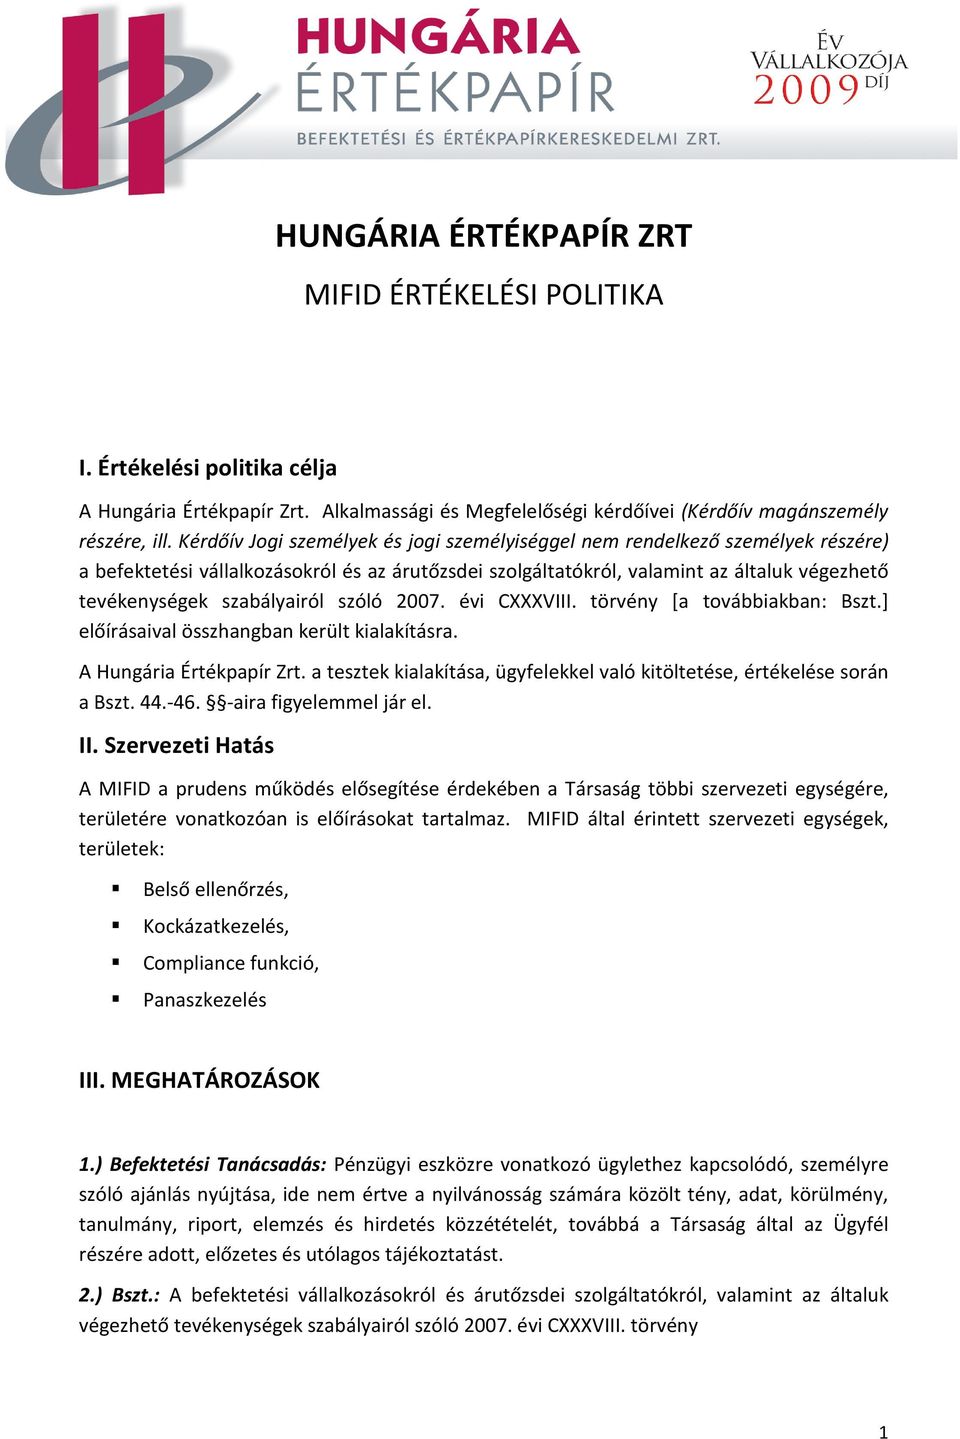 szabályairól szóló 2007. évi CXXXVIII. törvény [a továbbiakban: Bszt.] előírásaival összhangban került kialakításra. A Hungária Értékpapír Zrt.